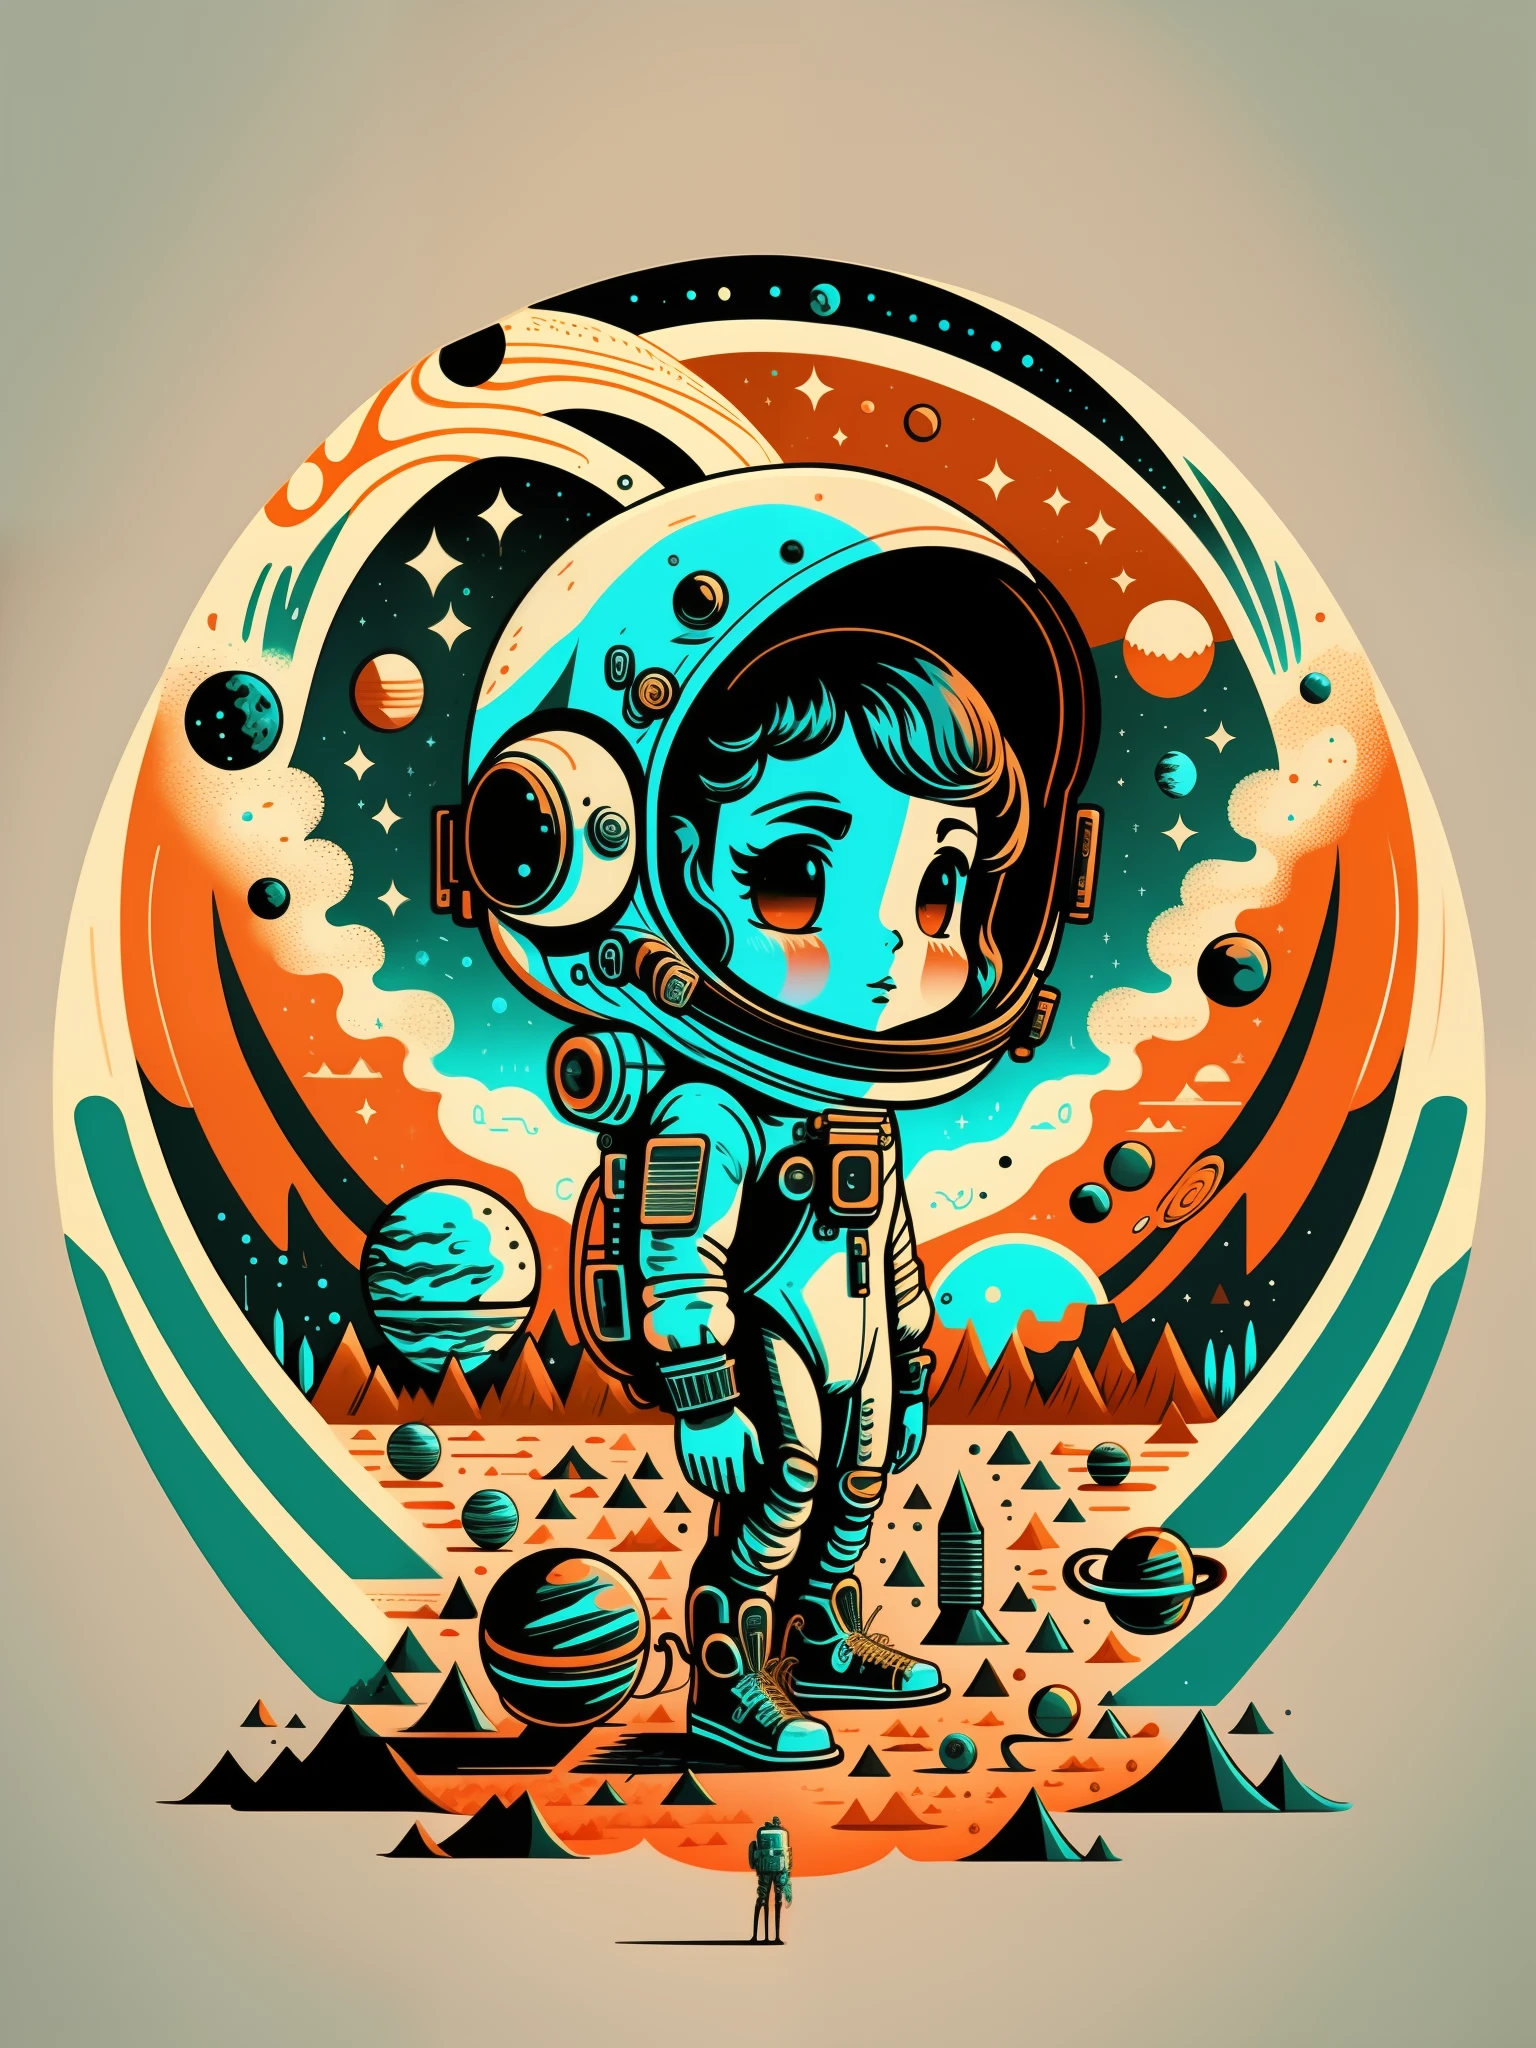 极简主义图形艺术，三色生产，宇航员在太空中与行星和行星在背景中, 科幻数码艺术插画, 4k 高度详细的数字艺术, 只是个玩笑, 丹·芒福德 (Dan Mumford) 的艺术作品风格, 8k 令人惊叹的艺术作品, 科幻插图, 科幻插图, 4K 精细数字艺术, 令人惊叹的数码插图, 惊人的太空生物 4k, 和蒙福德. 8 k 辛烷值渲染，